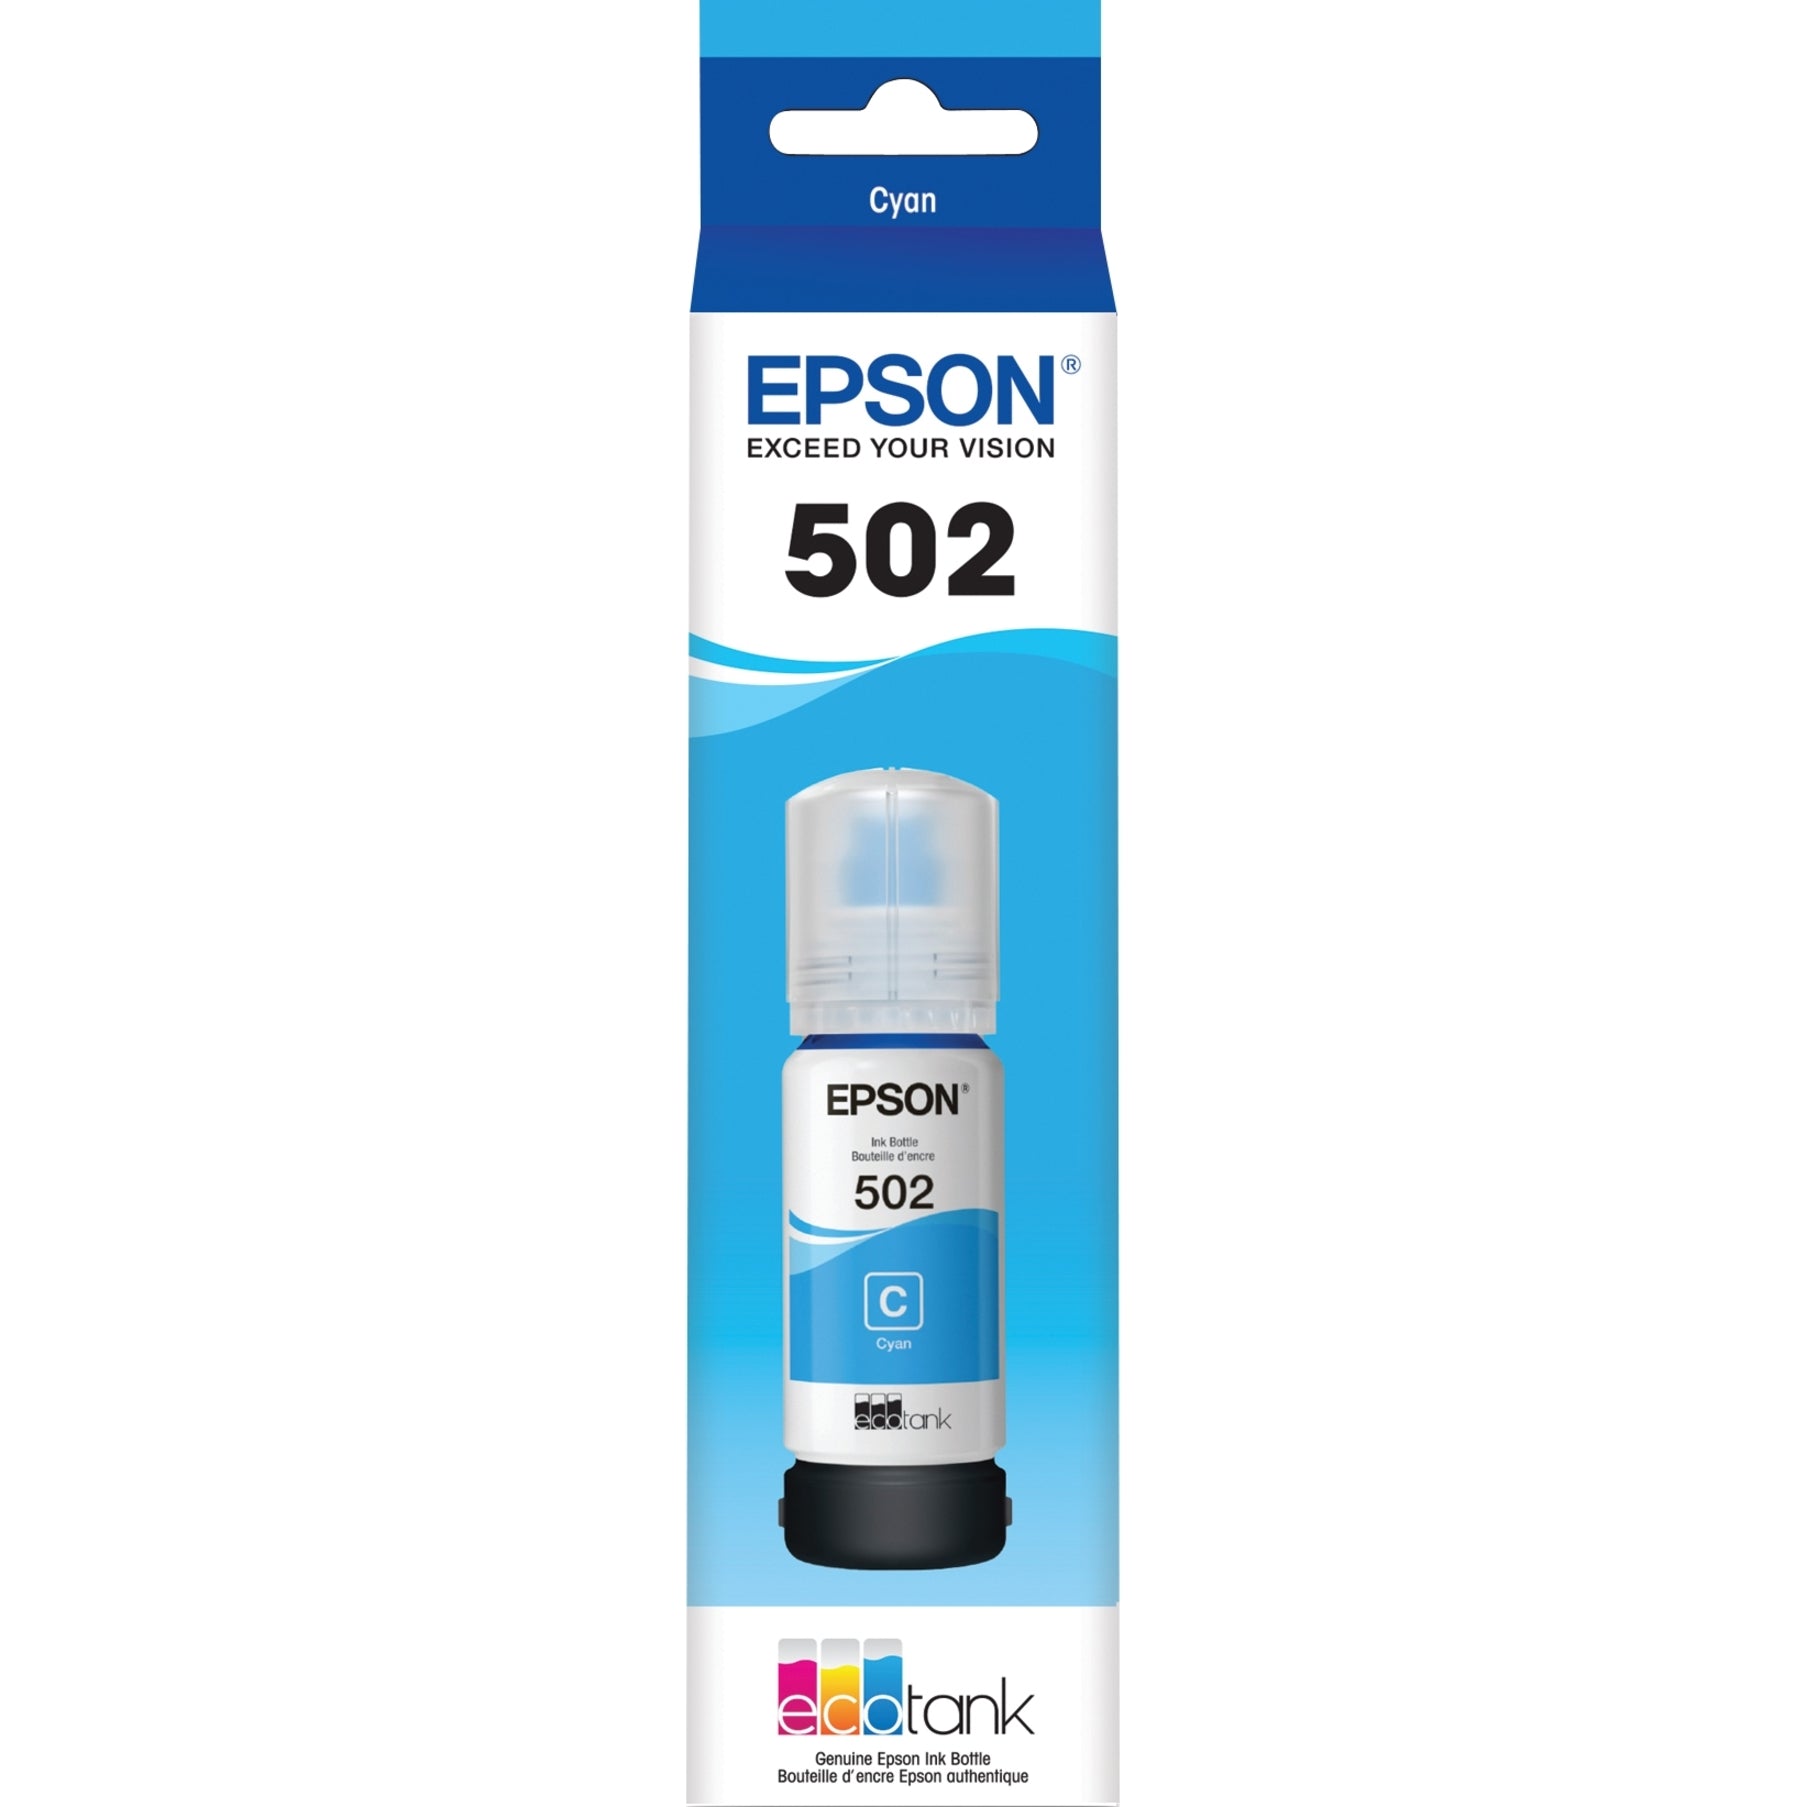 Epson T502 T502220-S Cyan Ink Bottle - Ink Refill Kit, Cyan